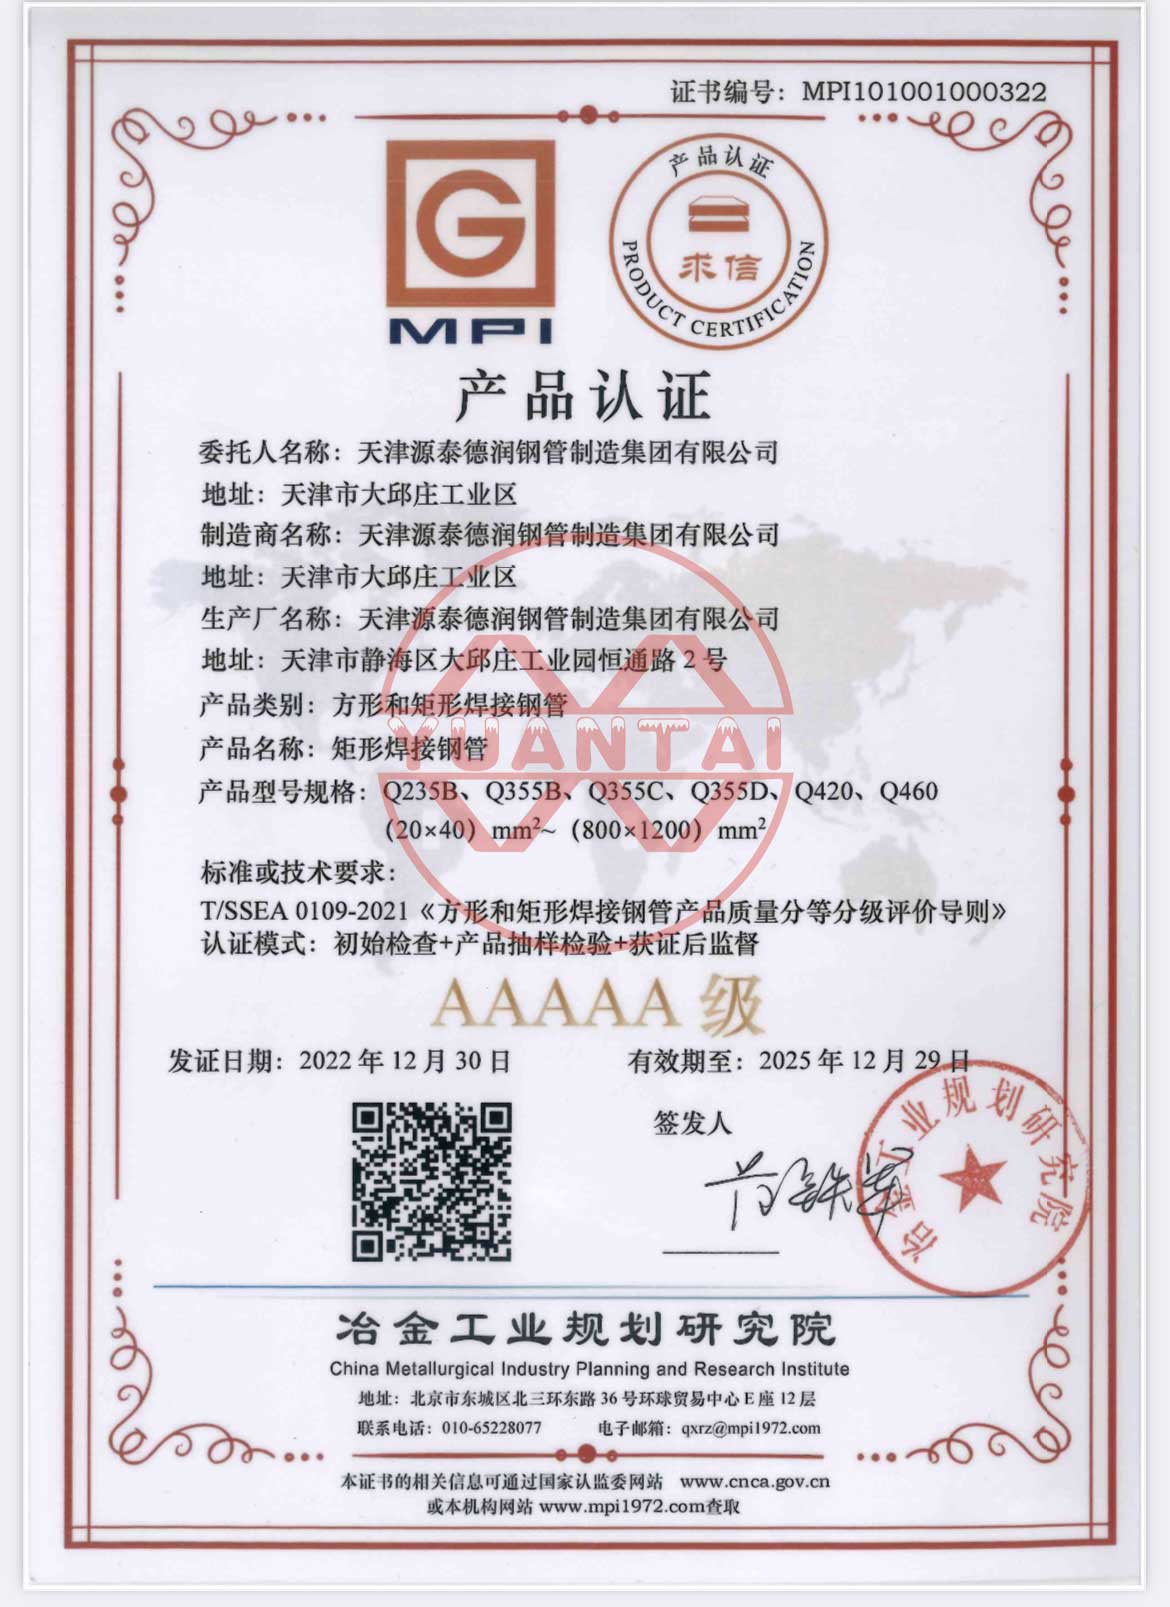 Os tubos de aceiro soldados cadrados e rectangulares do Grupo Tianjin Yuantai Derun recibiron a certificación de produto AAAAA polo Instituto de Planificación da Industria Metalúrxica.